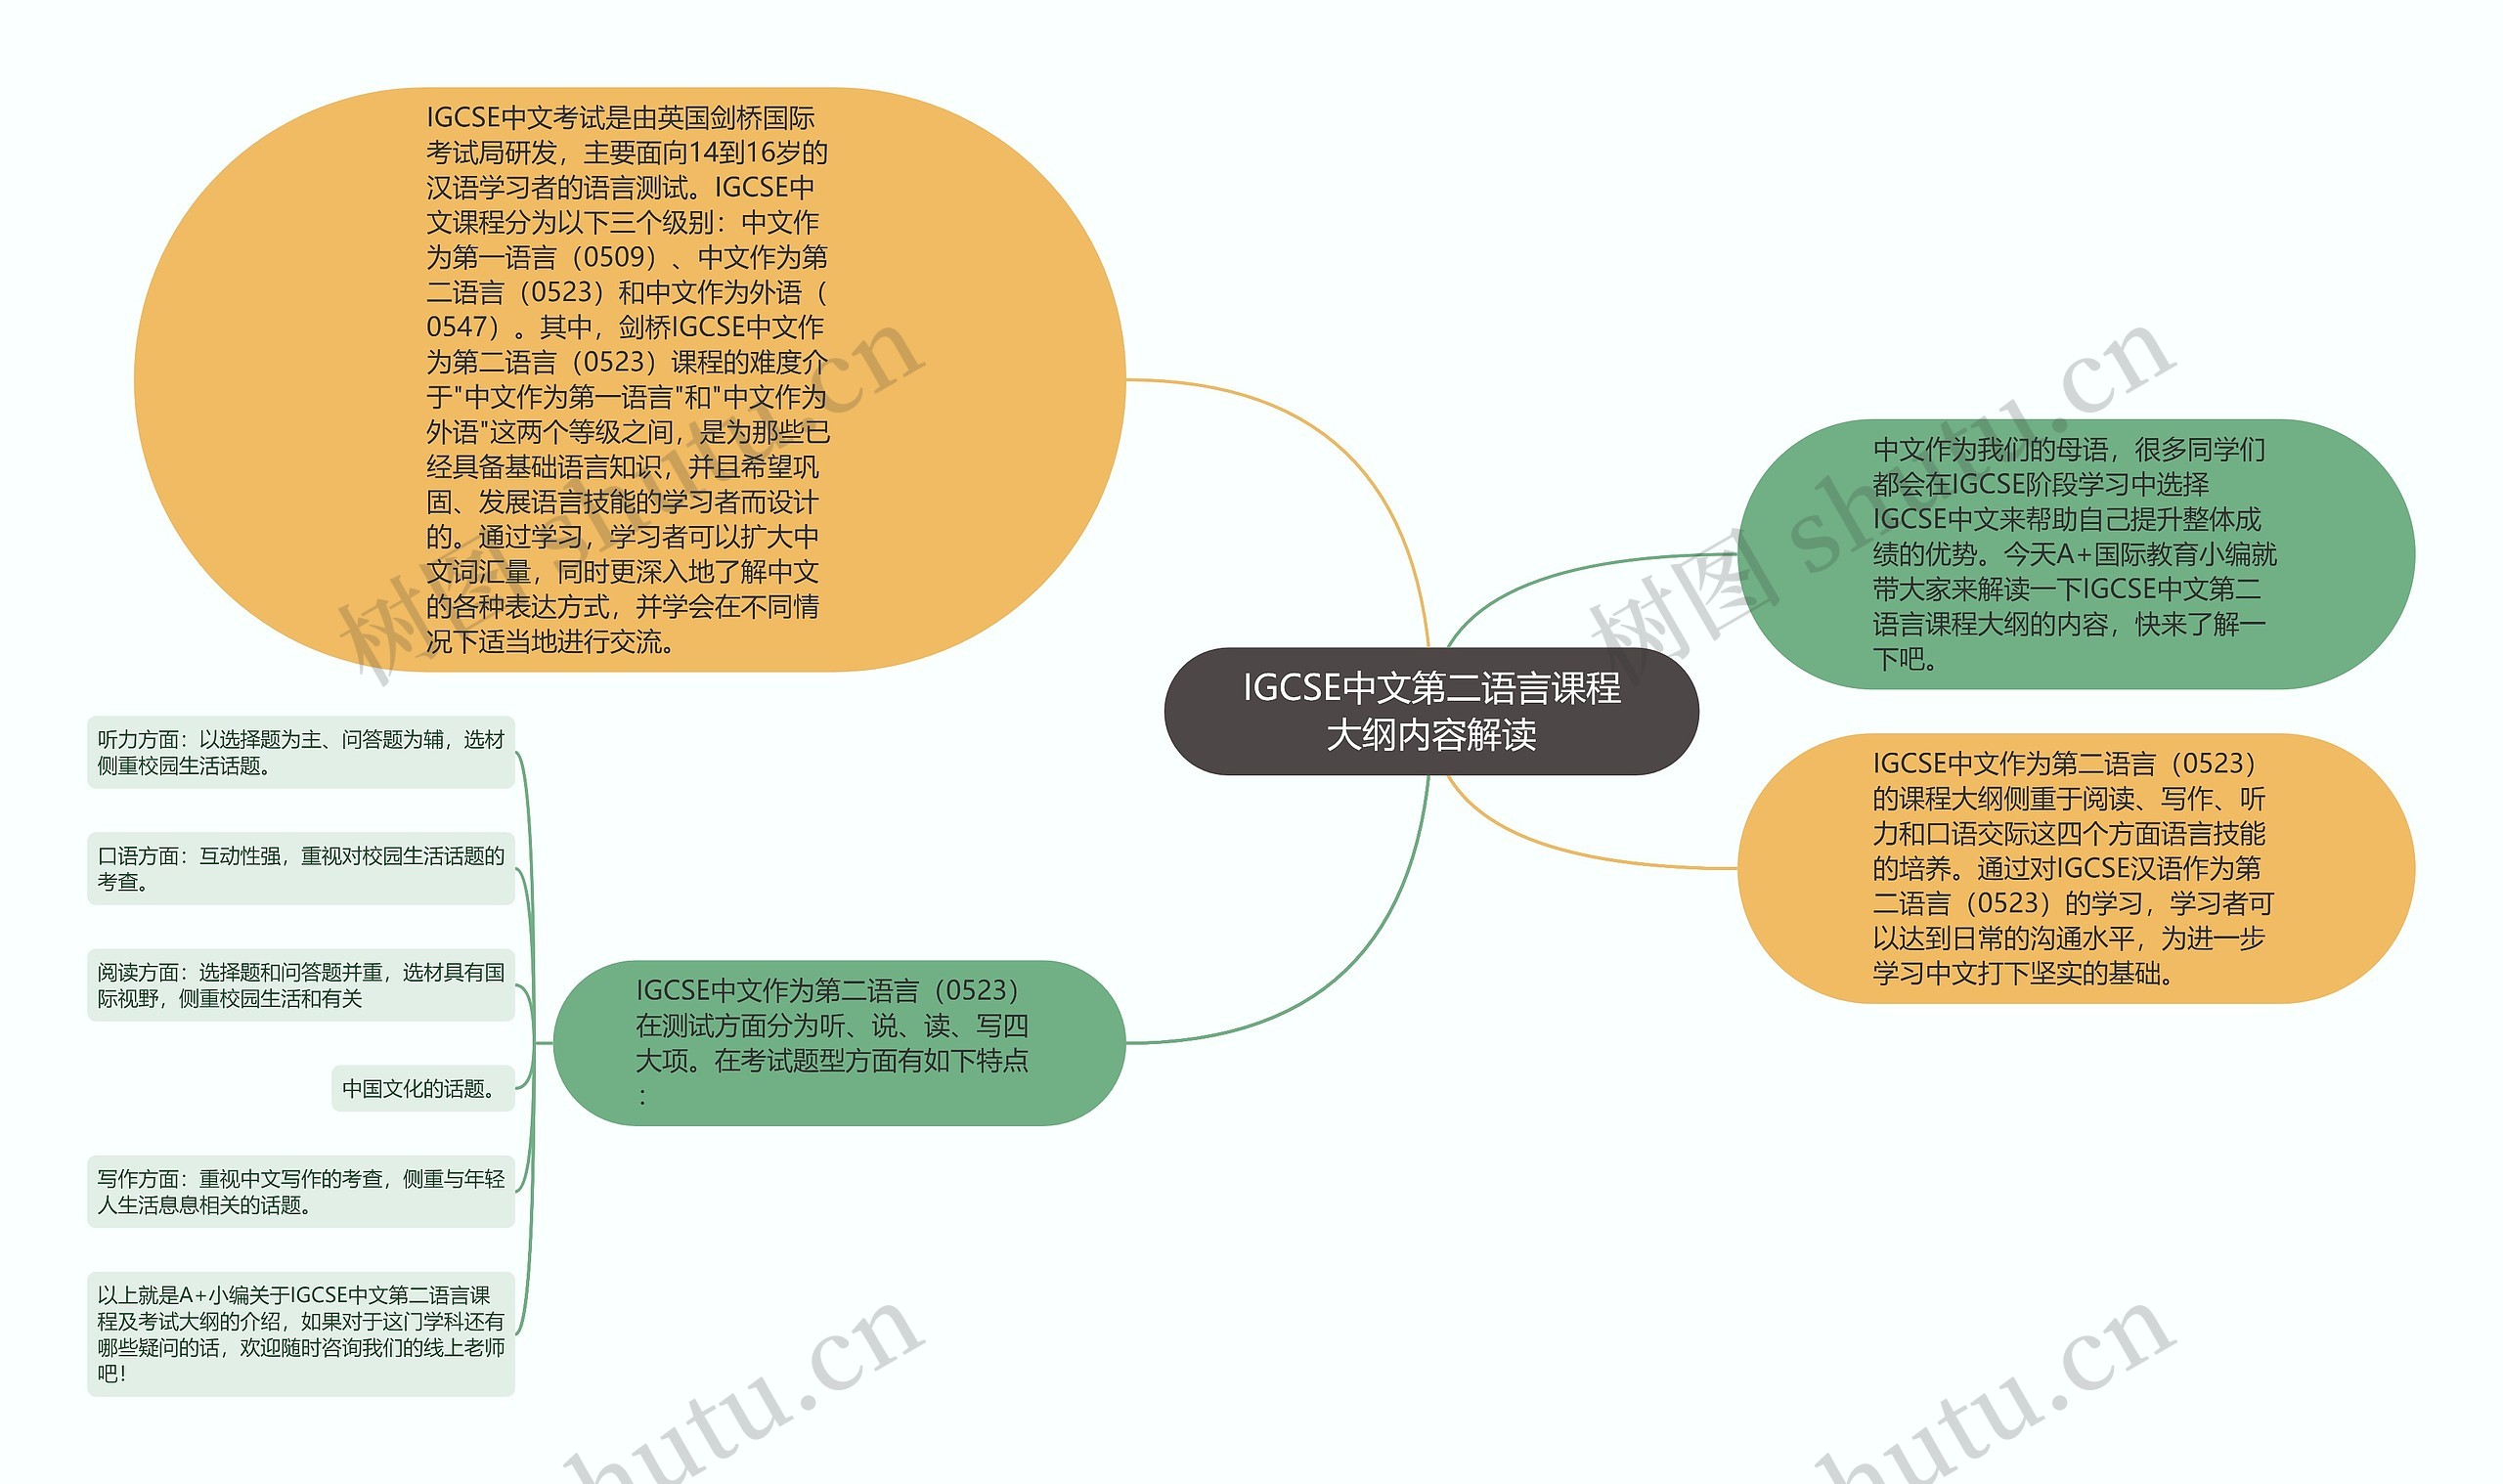 IGCSE中文第二语言课程大纲内容解读思维导图